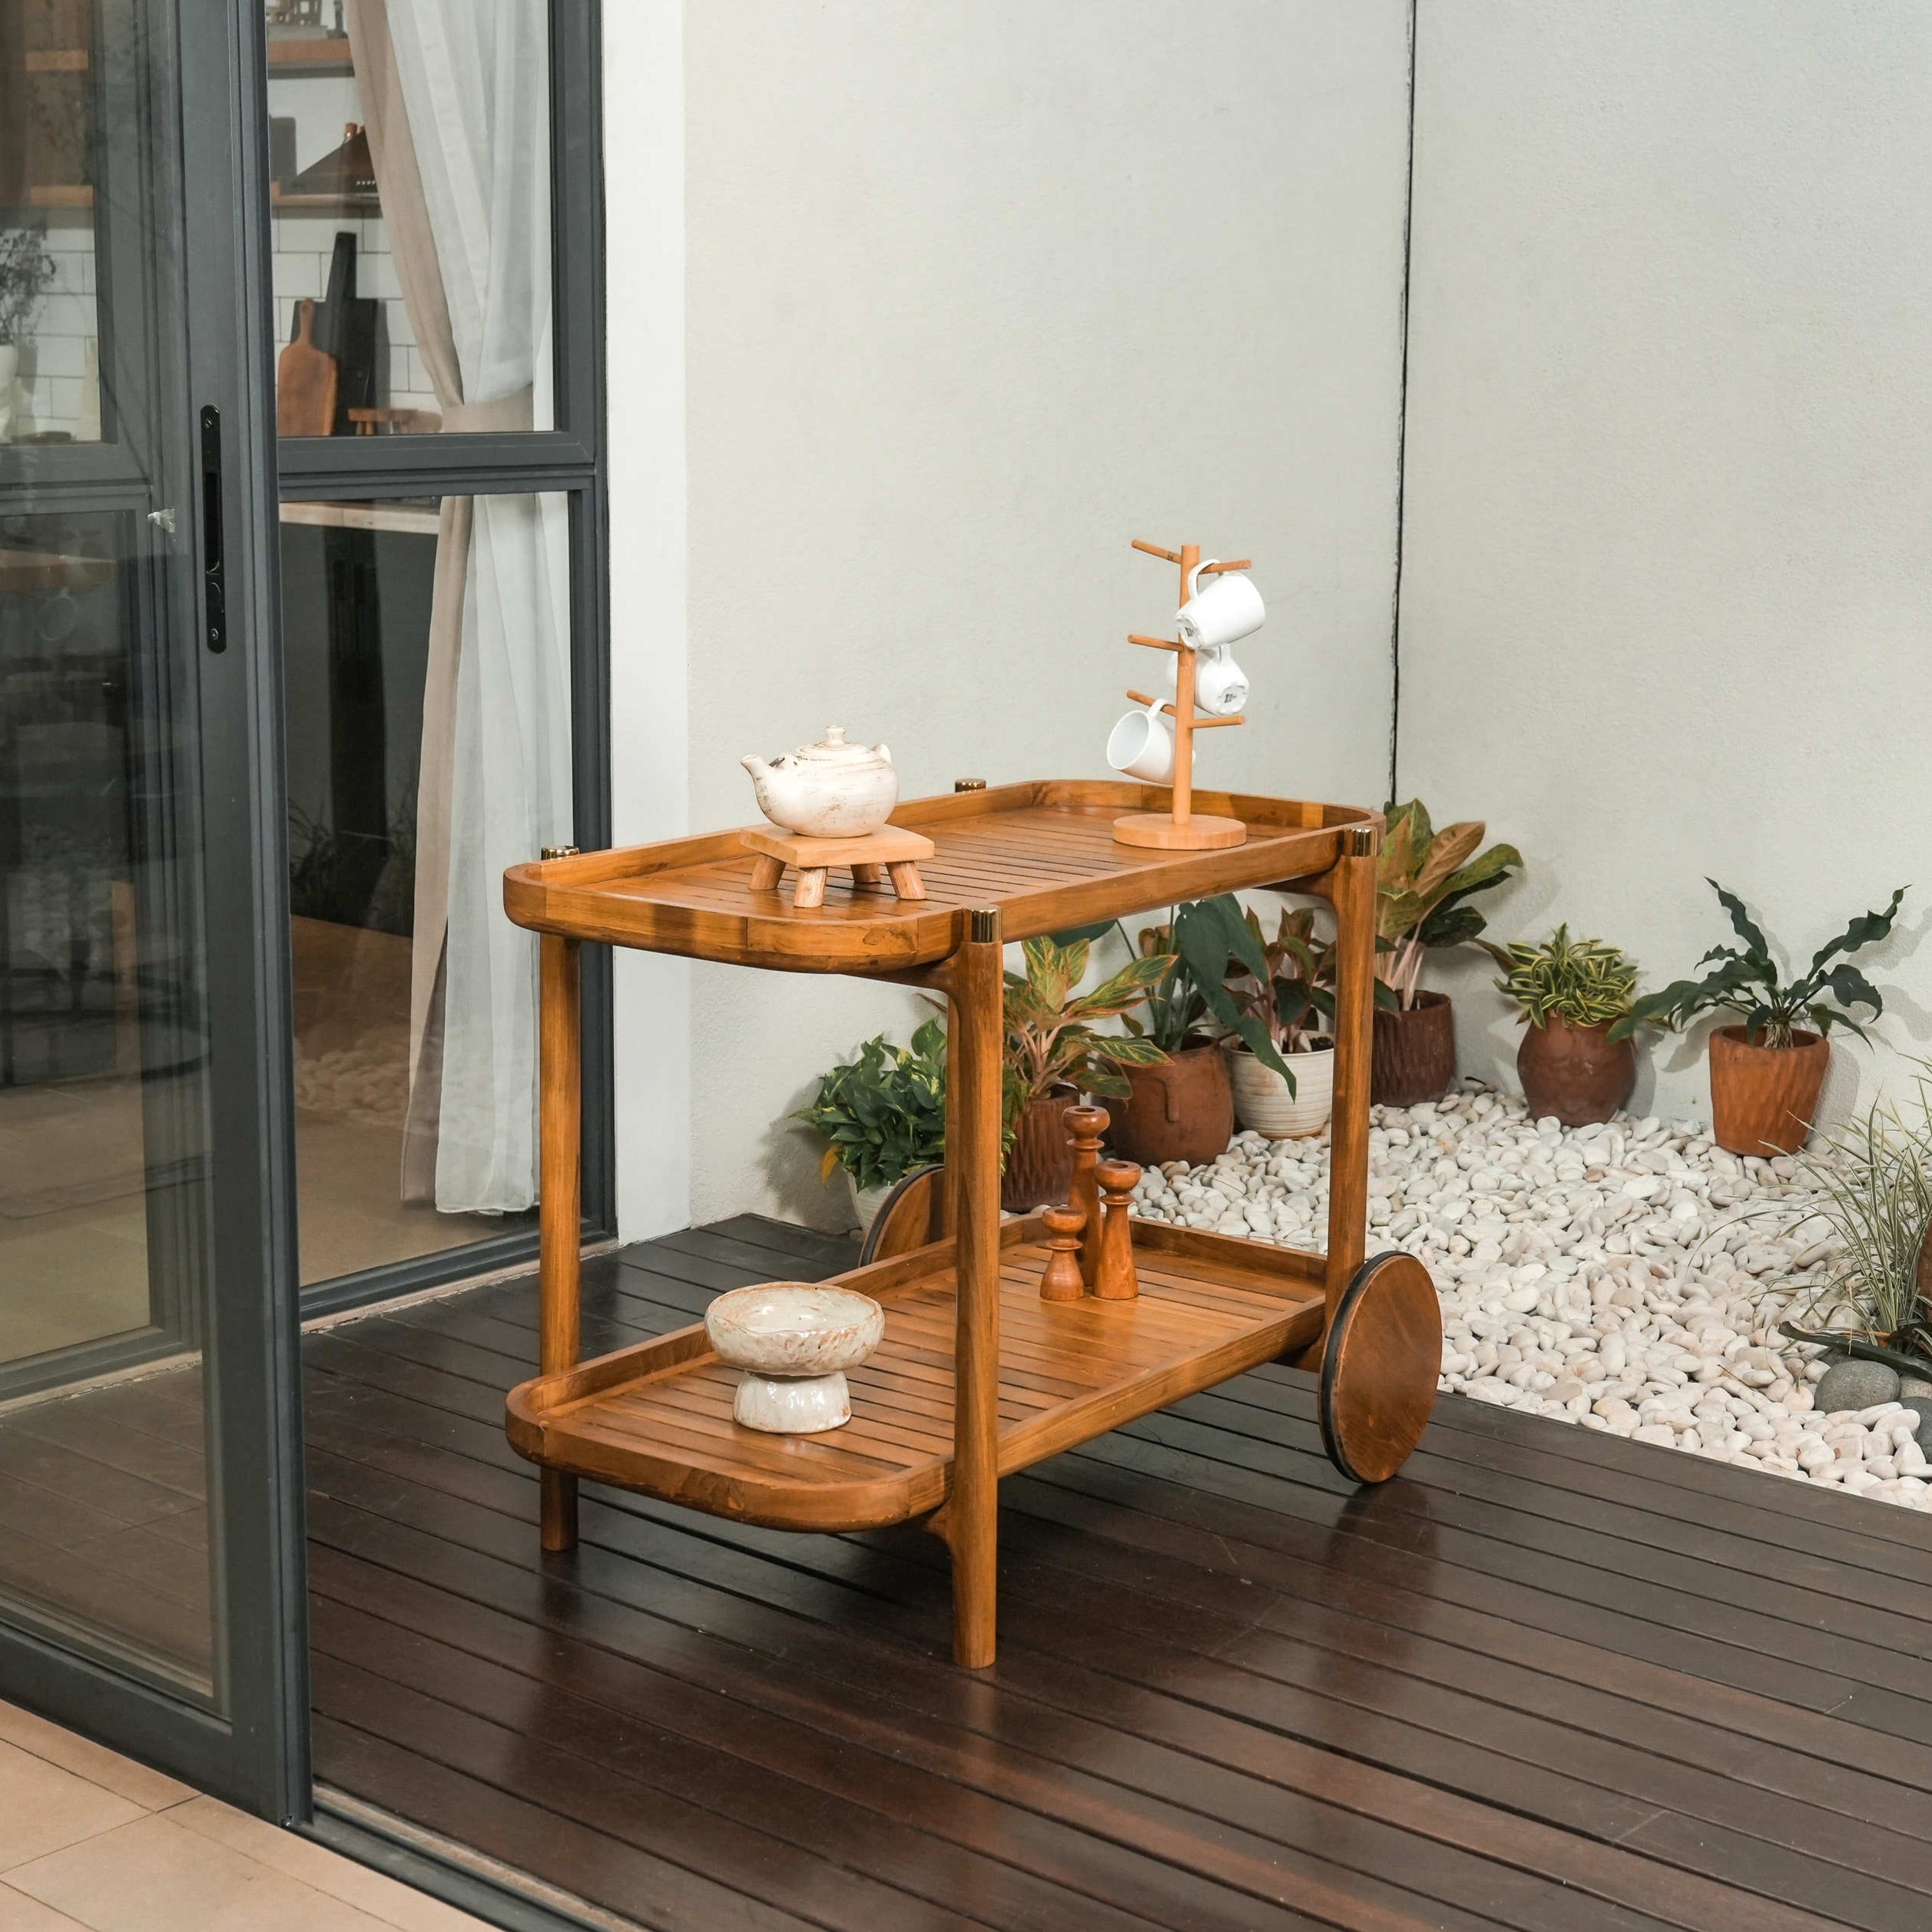 Trolly Kayu Jati Reclaimed Wood | Keindahan Handmade untuk Ruang Anda Mirror Lagom Home Store Jati Furnitur Teak Furniture Jakarta